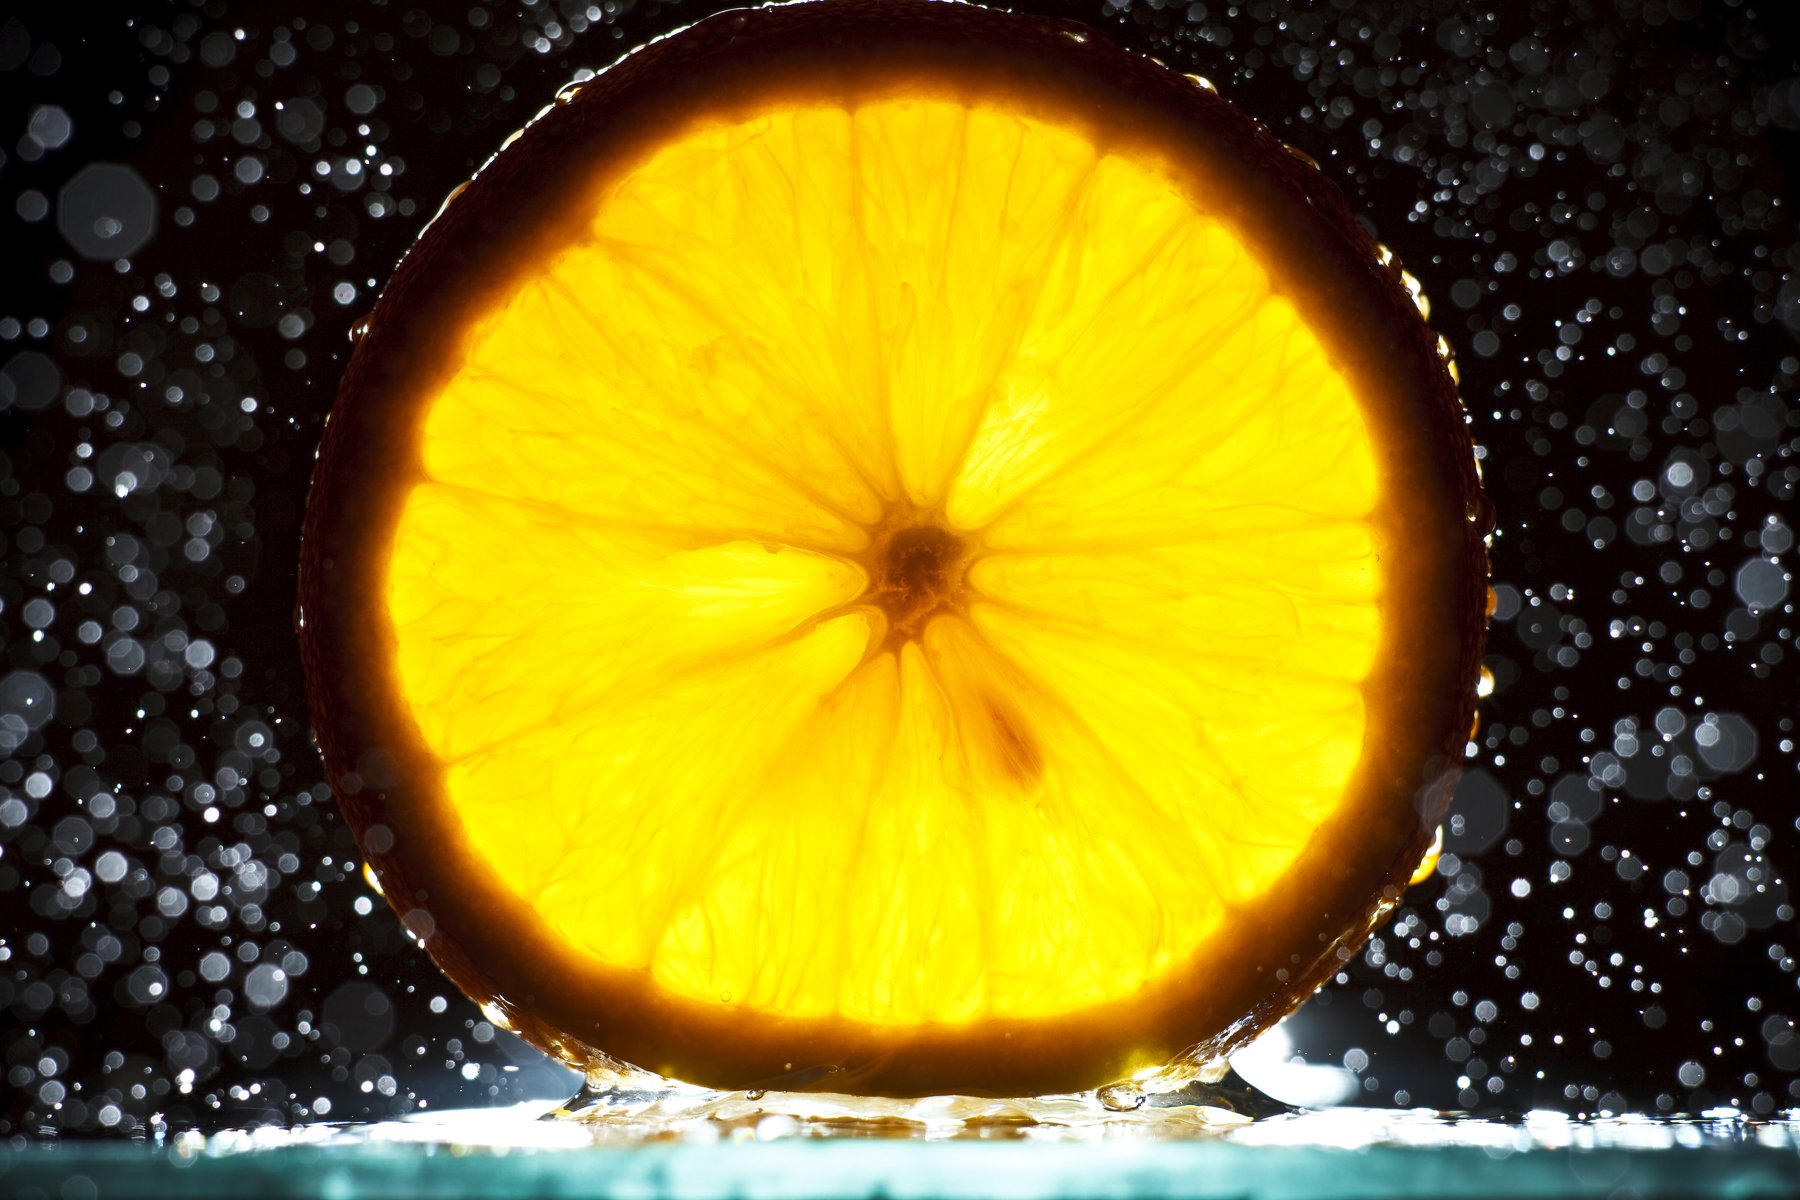 Апельсин, макро, предметка, вода, брызги, абстракт, Иван Губанов